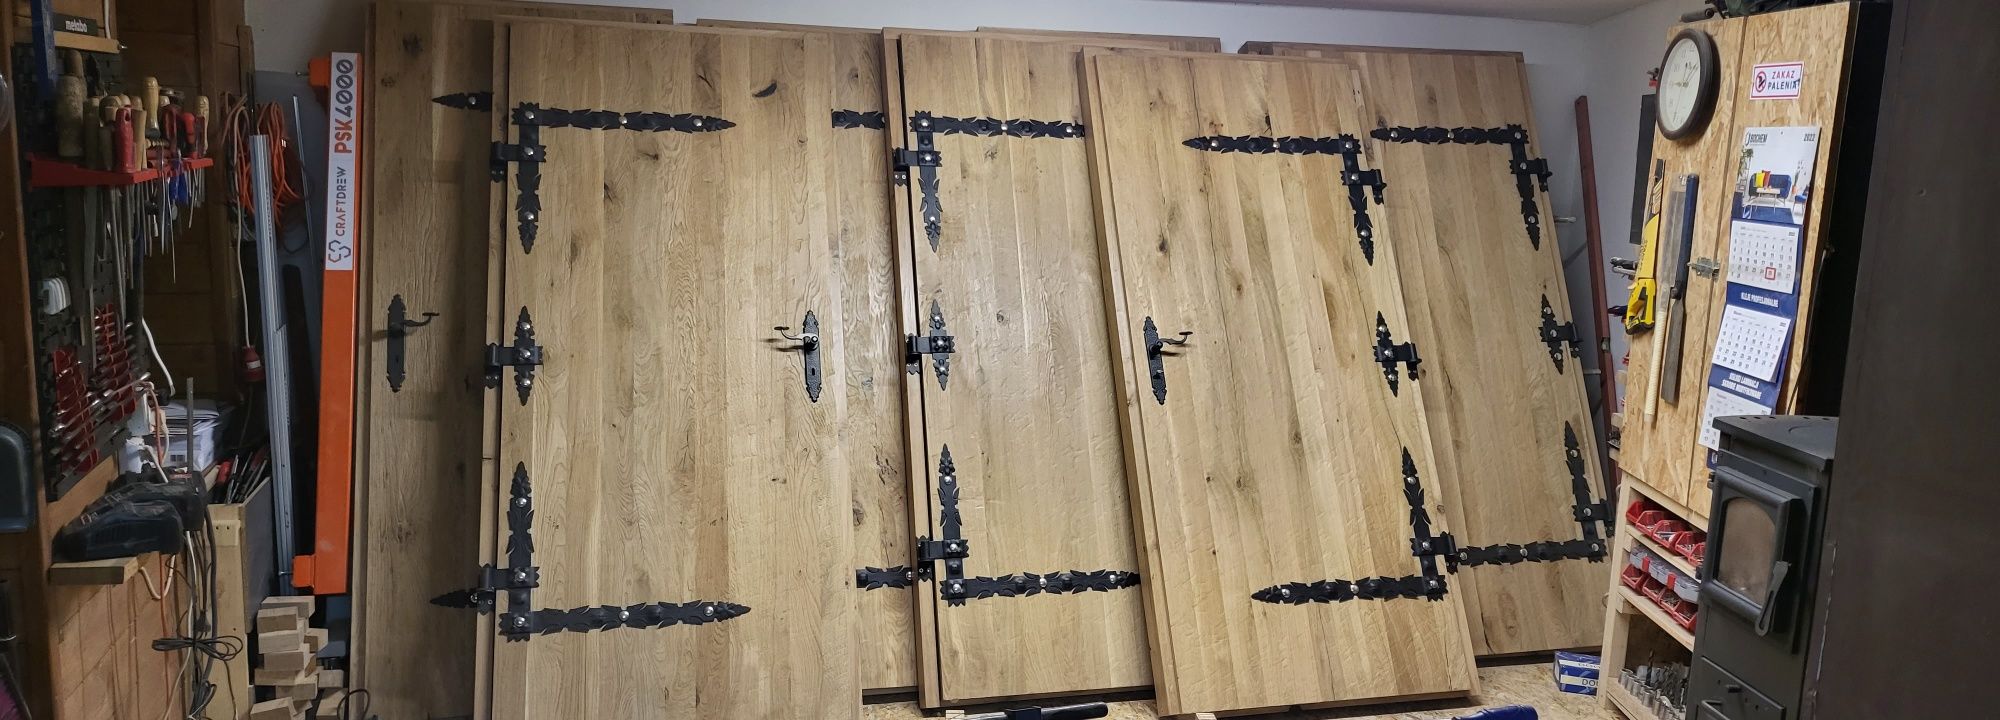 Drzwi dębowe rustykalne zamkowe do piwnic ziemianek